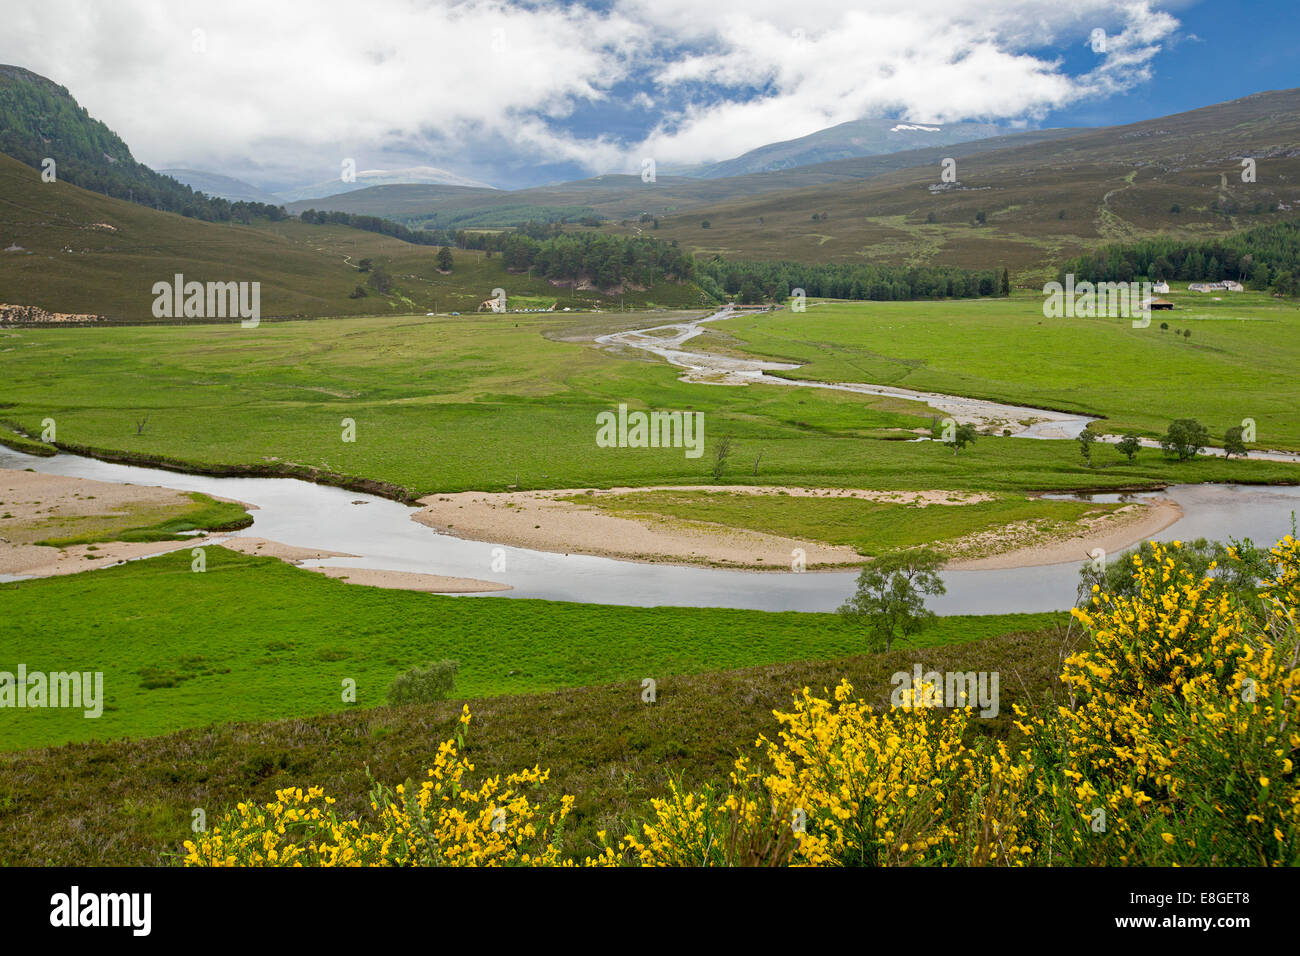 Weite Landschaft im schottischen Hochland, goldene Wildblumen, River Dee, smaragdgrünes Tal, Wälder & Bergen unter nebligen blauen Himmel Stockfoto